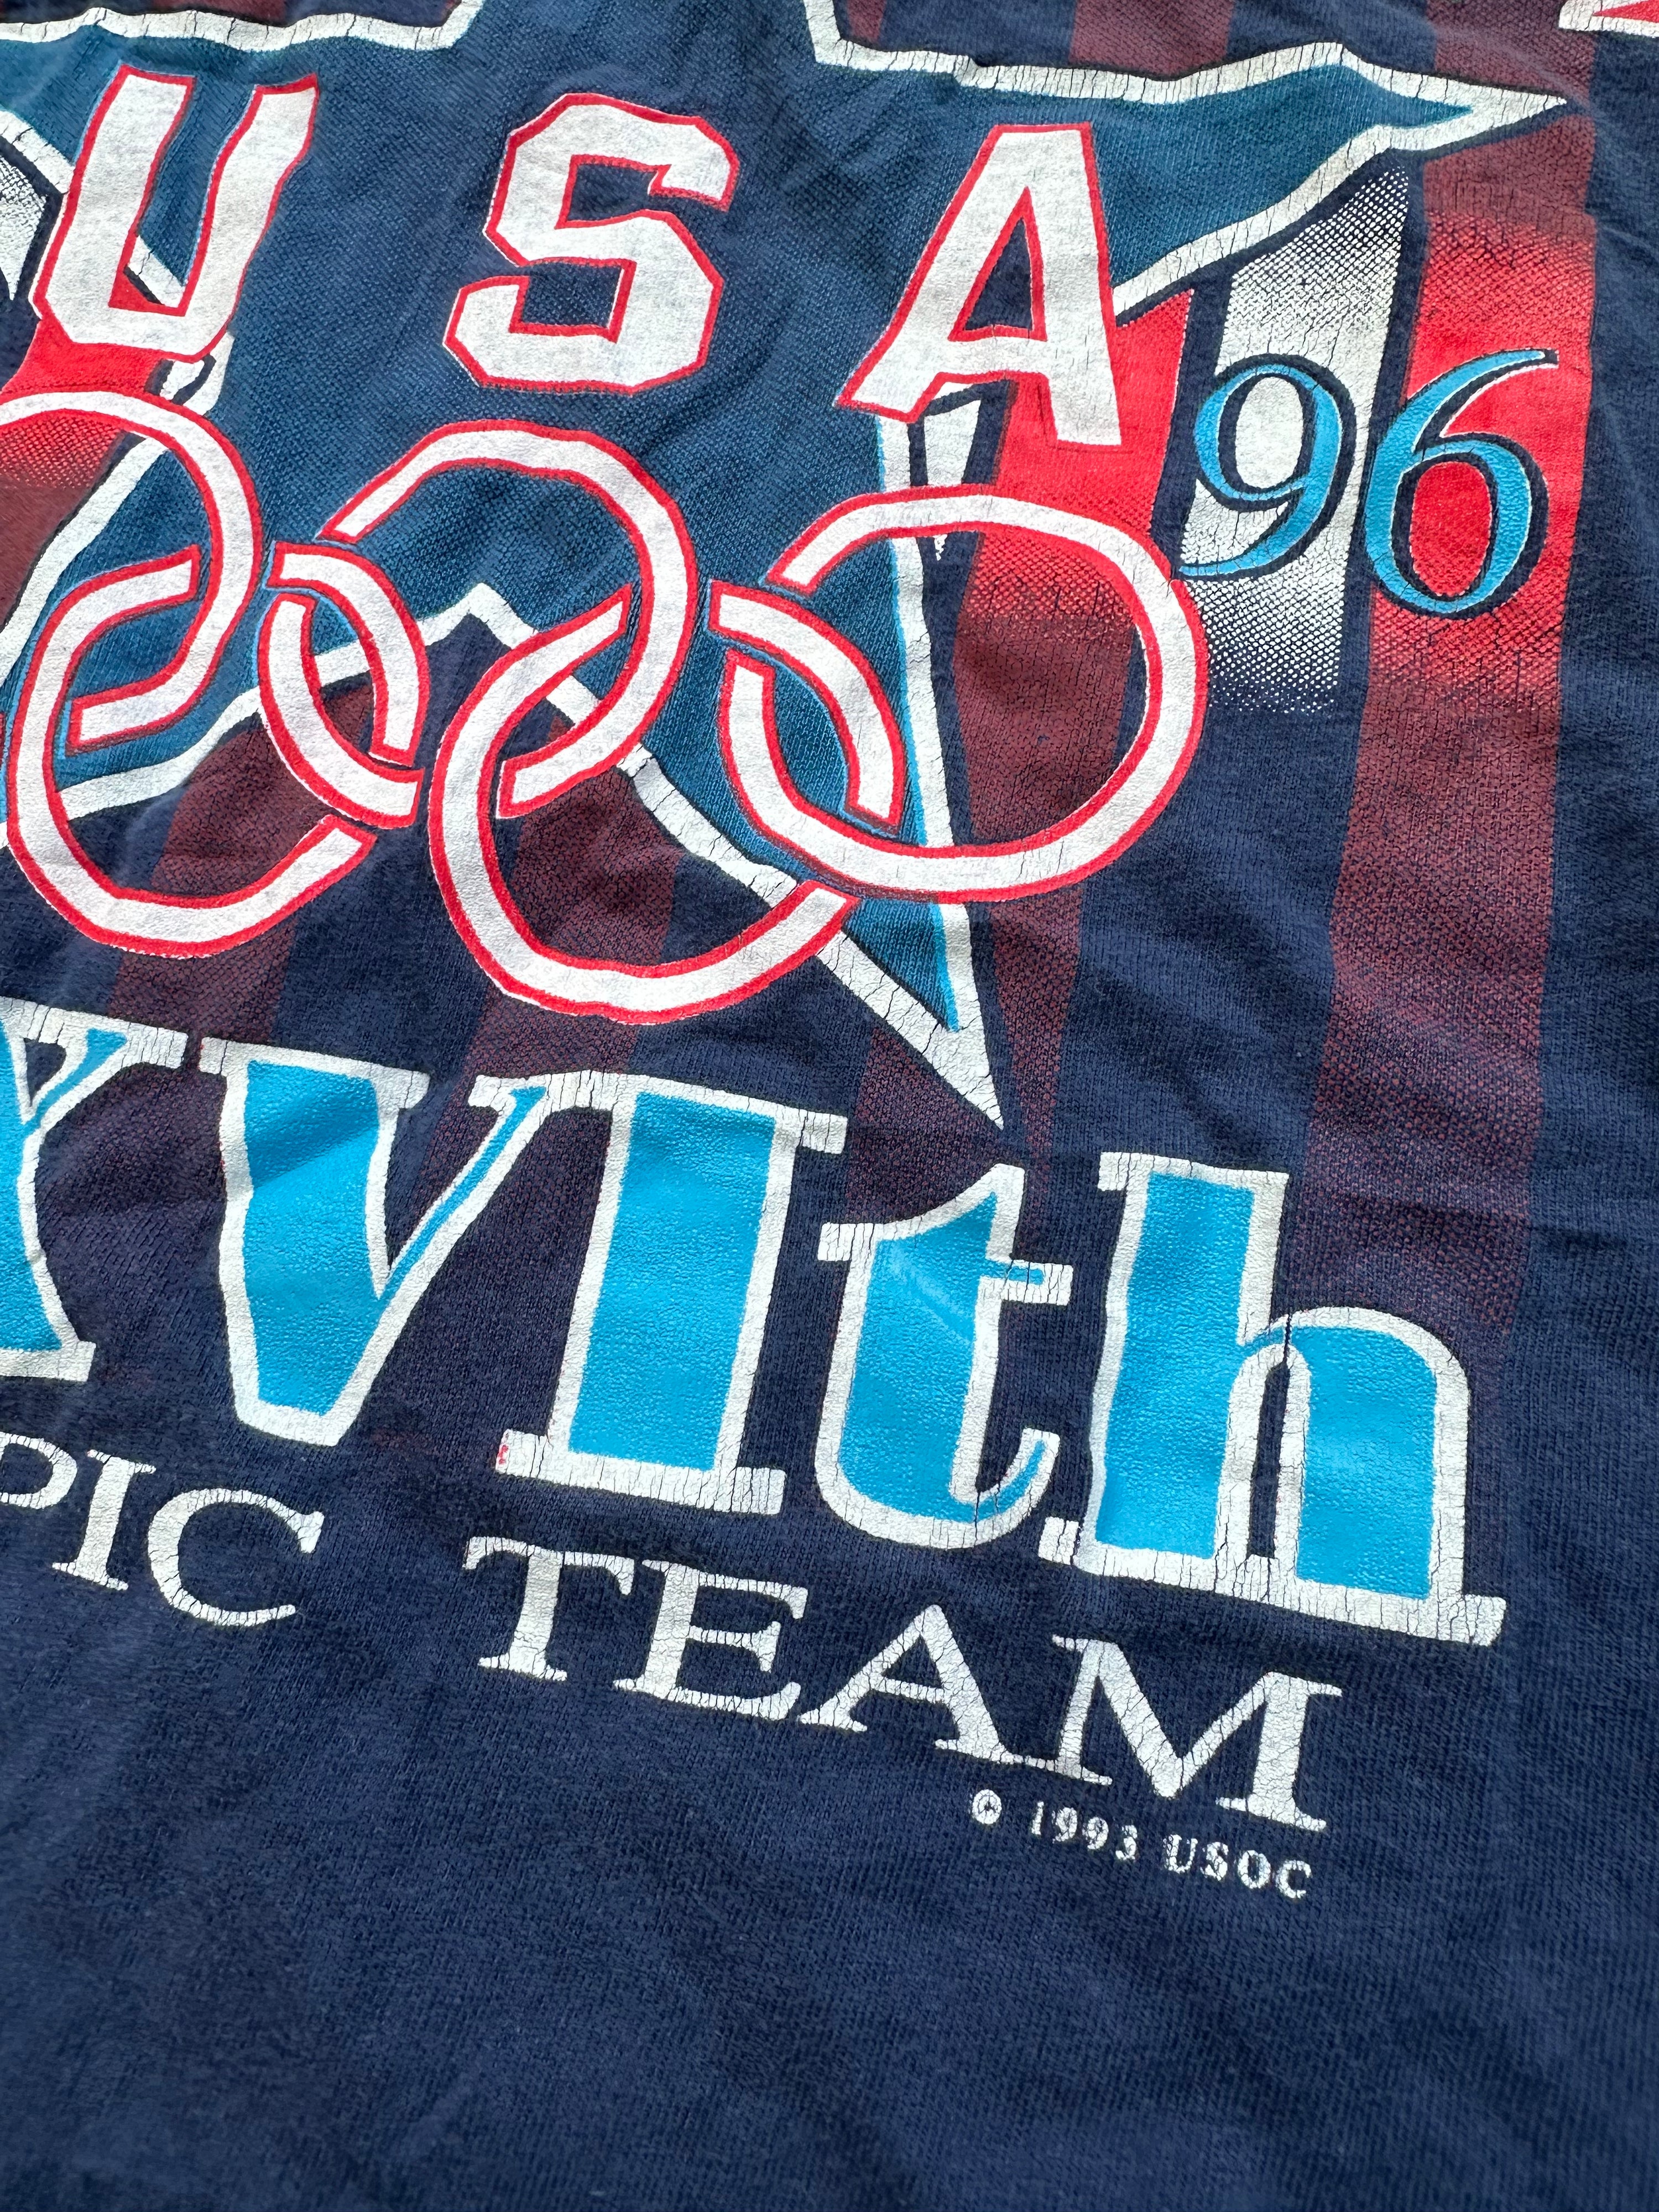 Vintage Olympia 1996 Team USA Hanes T-Shirt (XL)